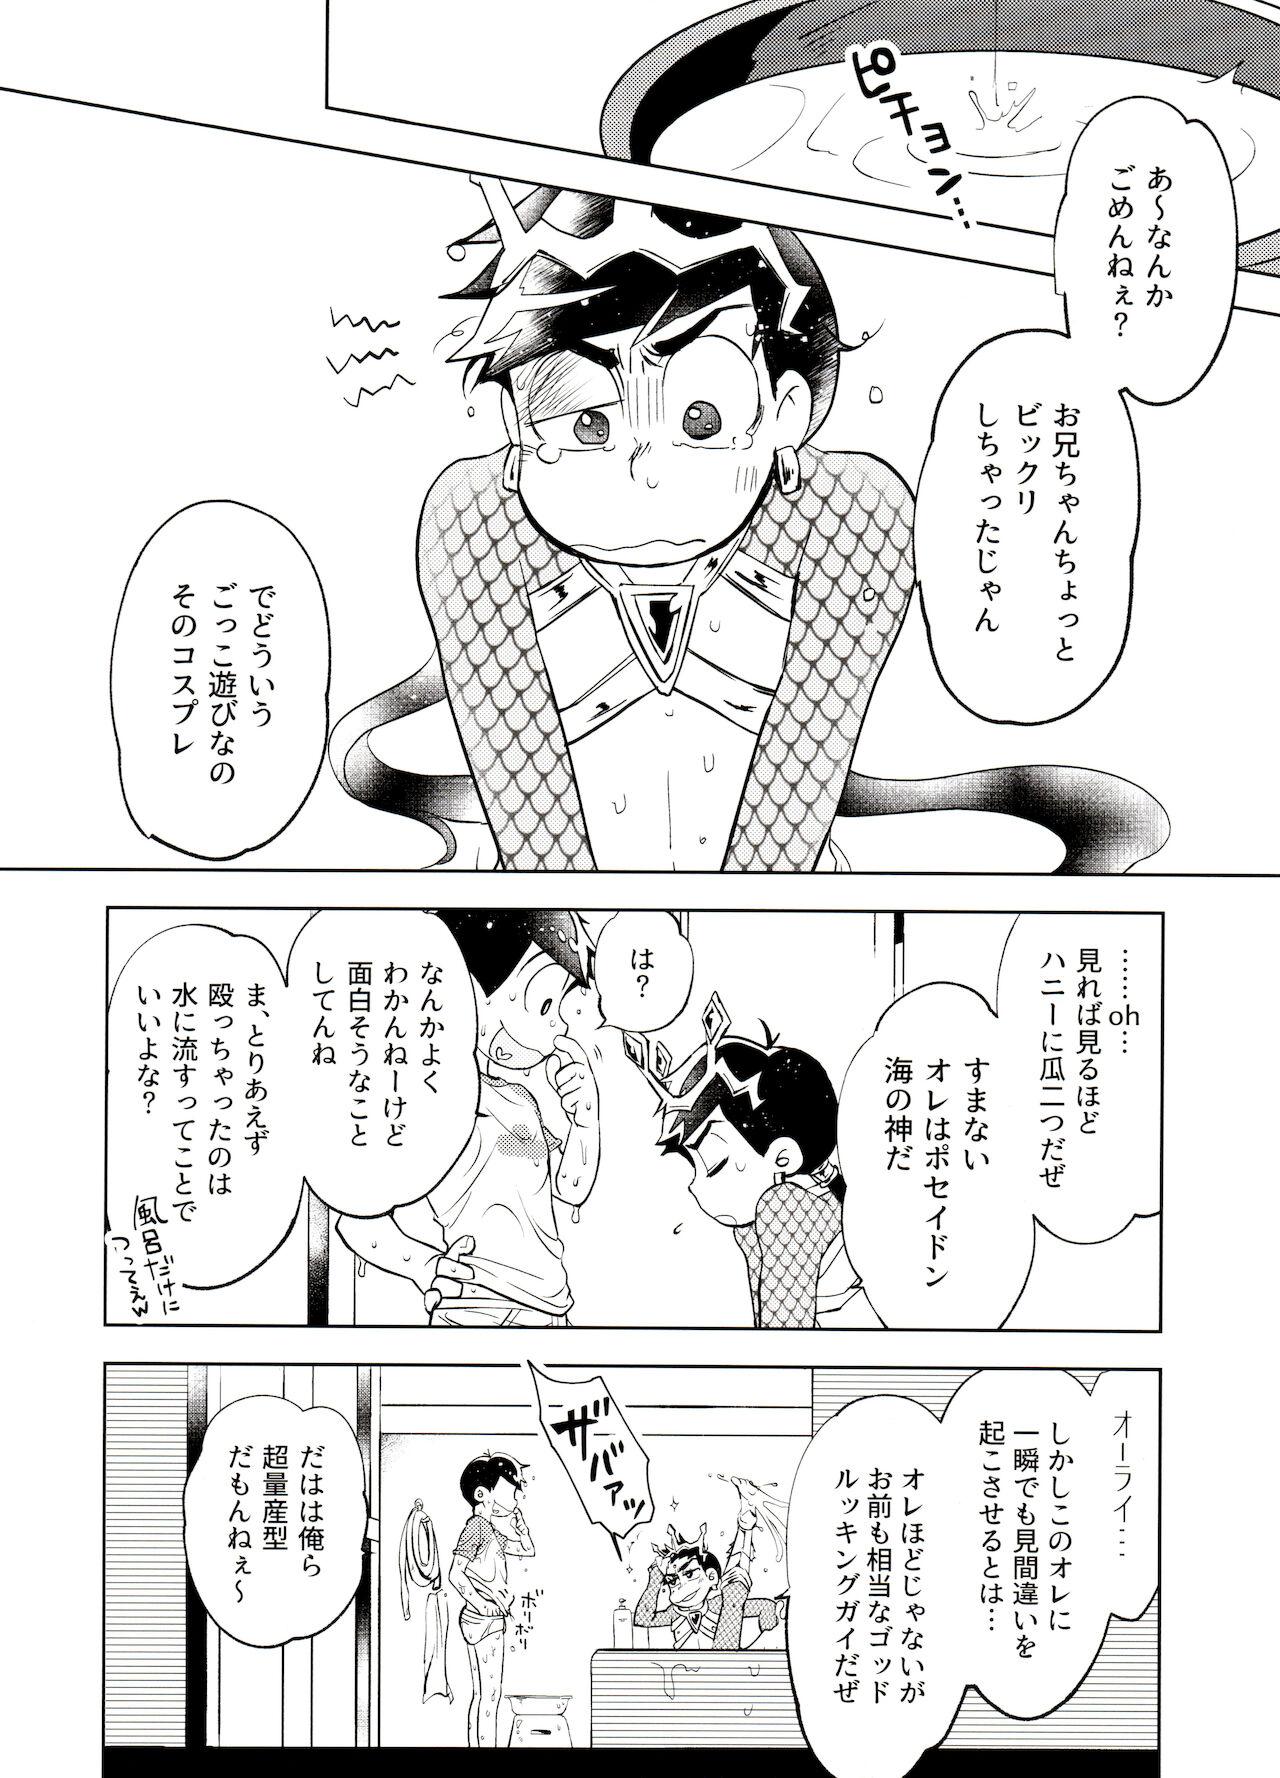 Chacal Honjitsu wa Tokoro ni Yori Kaminari o Tomonatta Kami to Narudeshou. - Osomatsu-san Shemales - Page 7